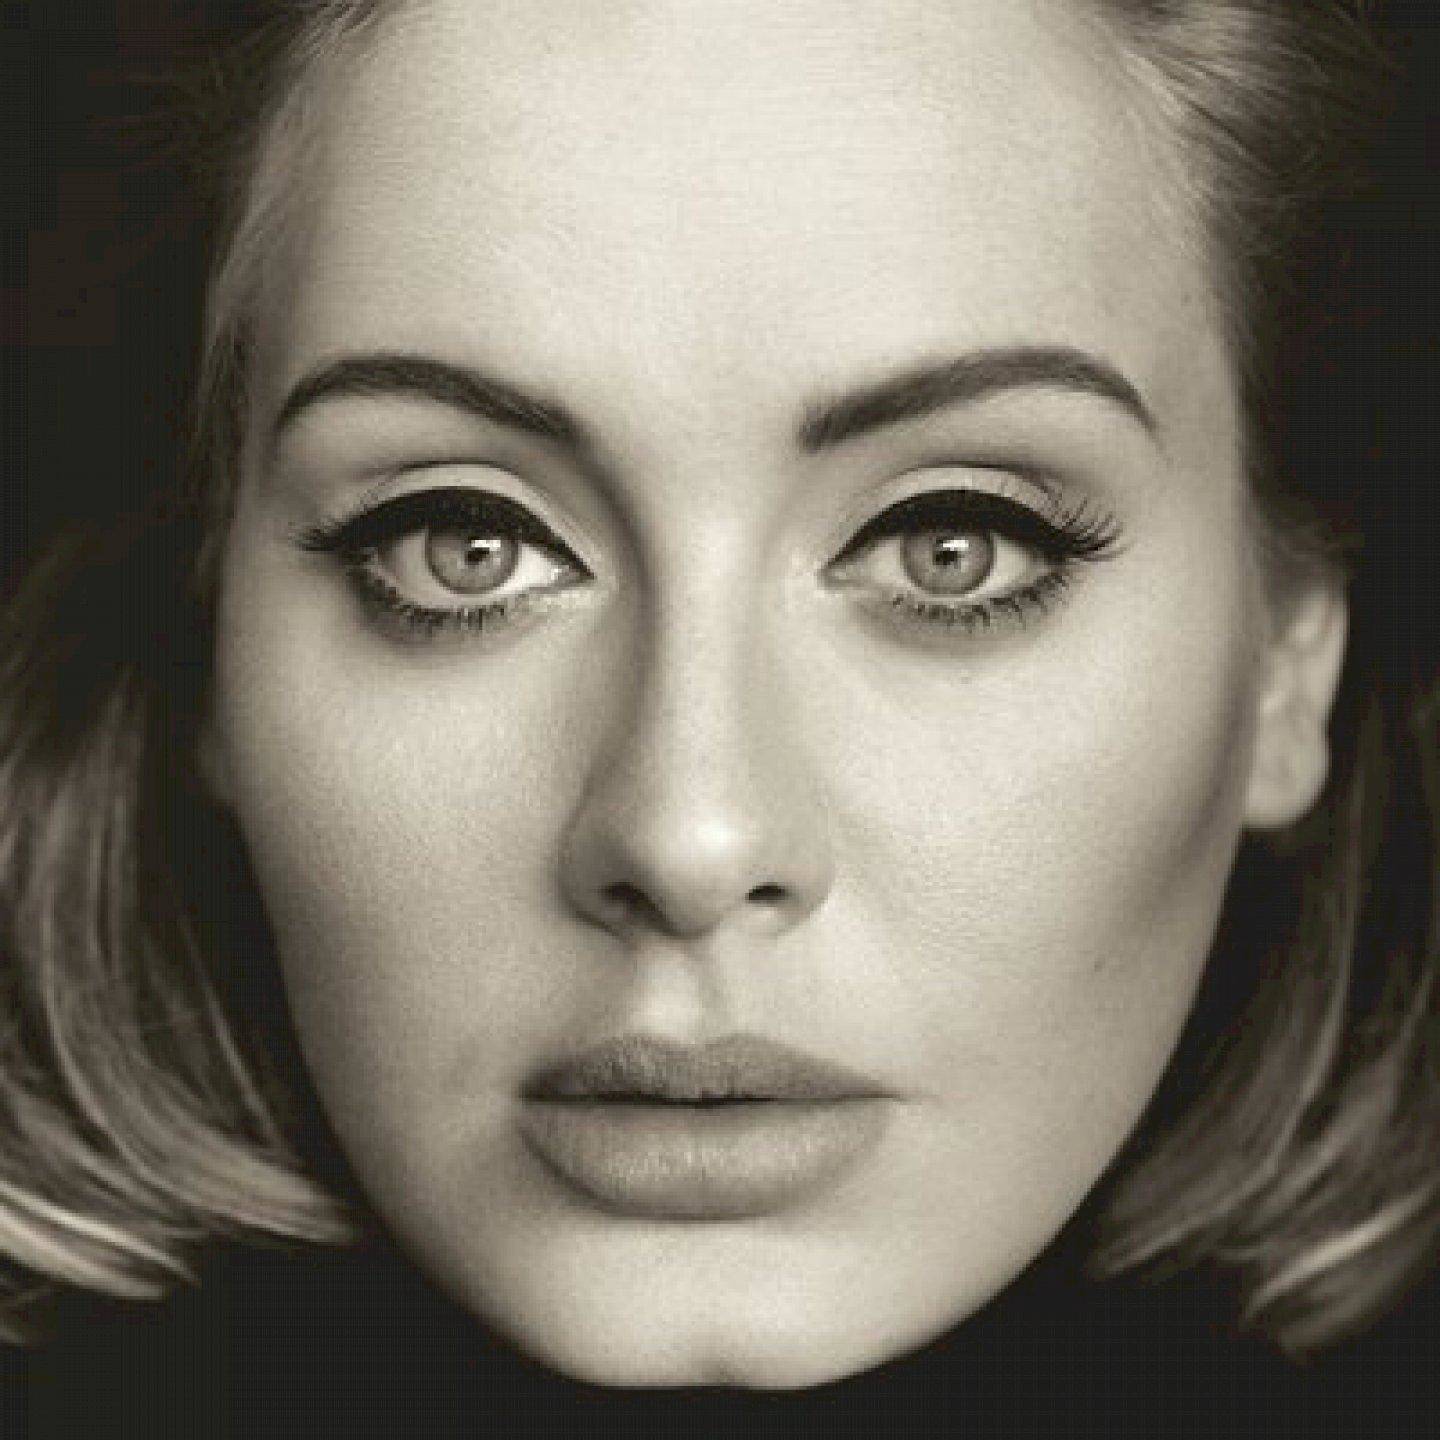 Singer Adele कथित तौर पर रैपर स्केप्टा को कर रहीं हैं डेट